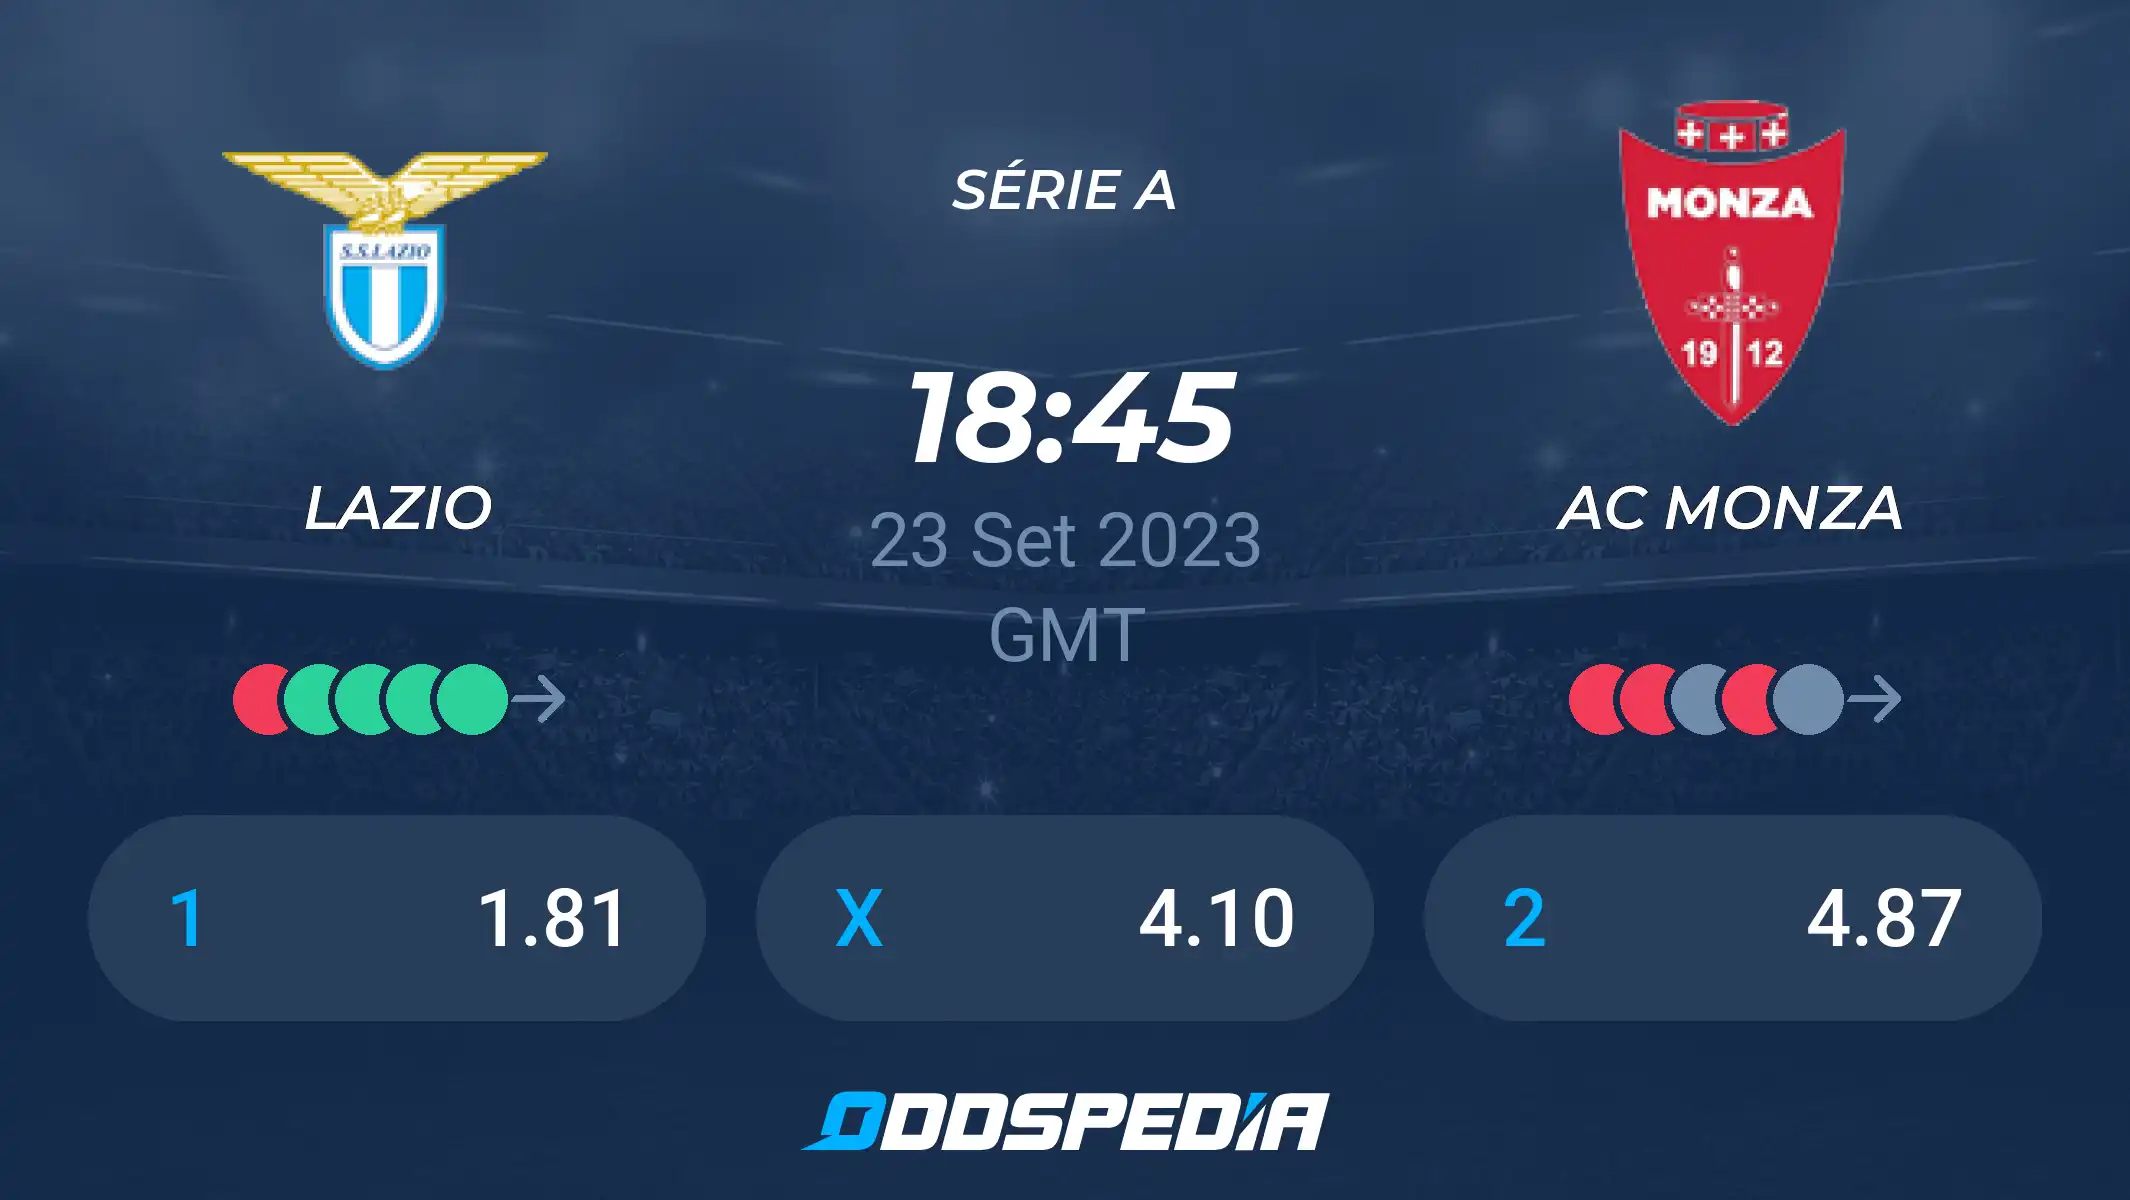 A.C. Monza x Lazio: A Clash of Football Titans